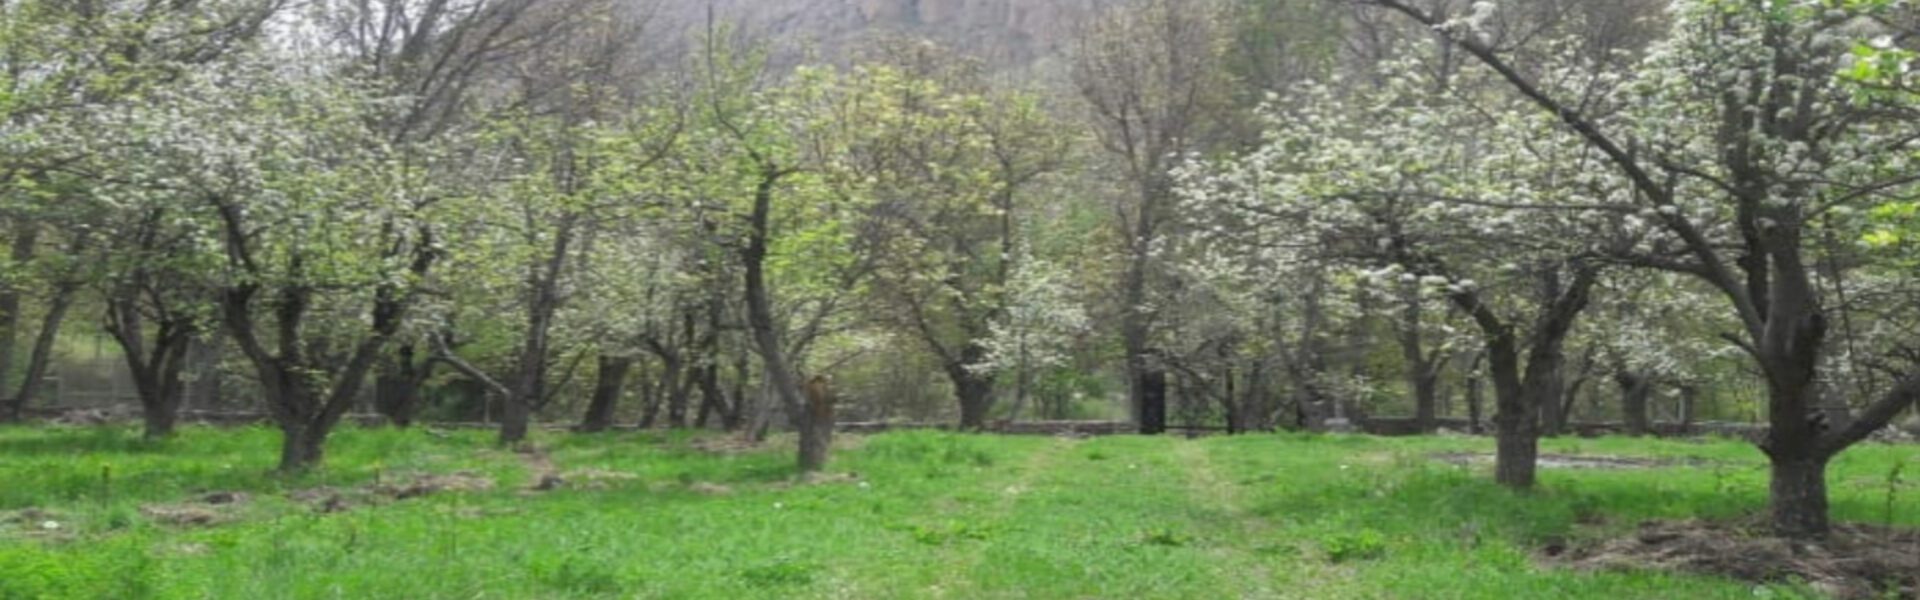 فروش باغ روستای خمده فیروزکوه